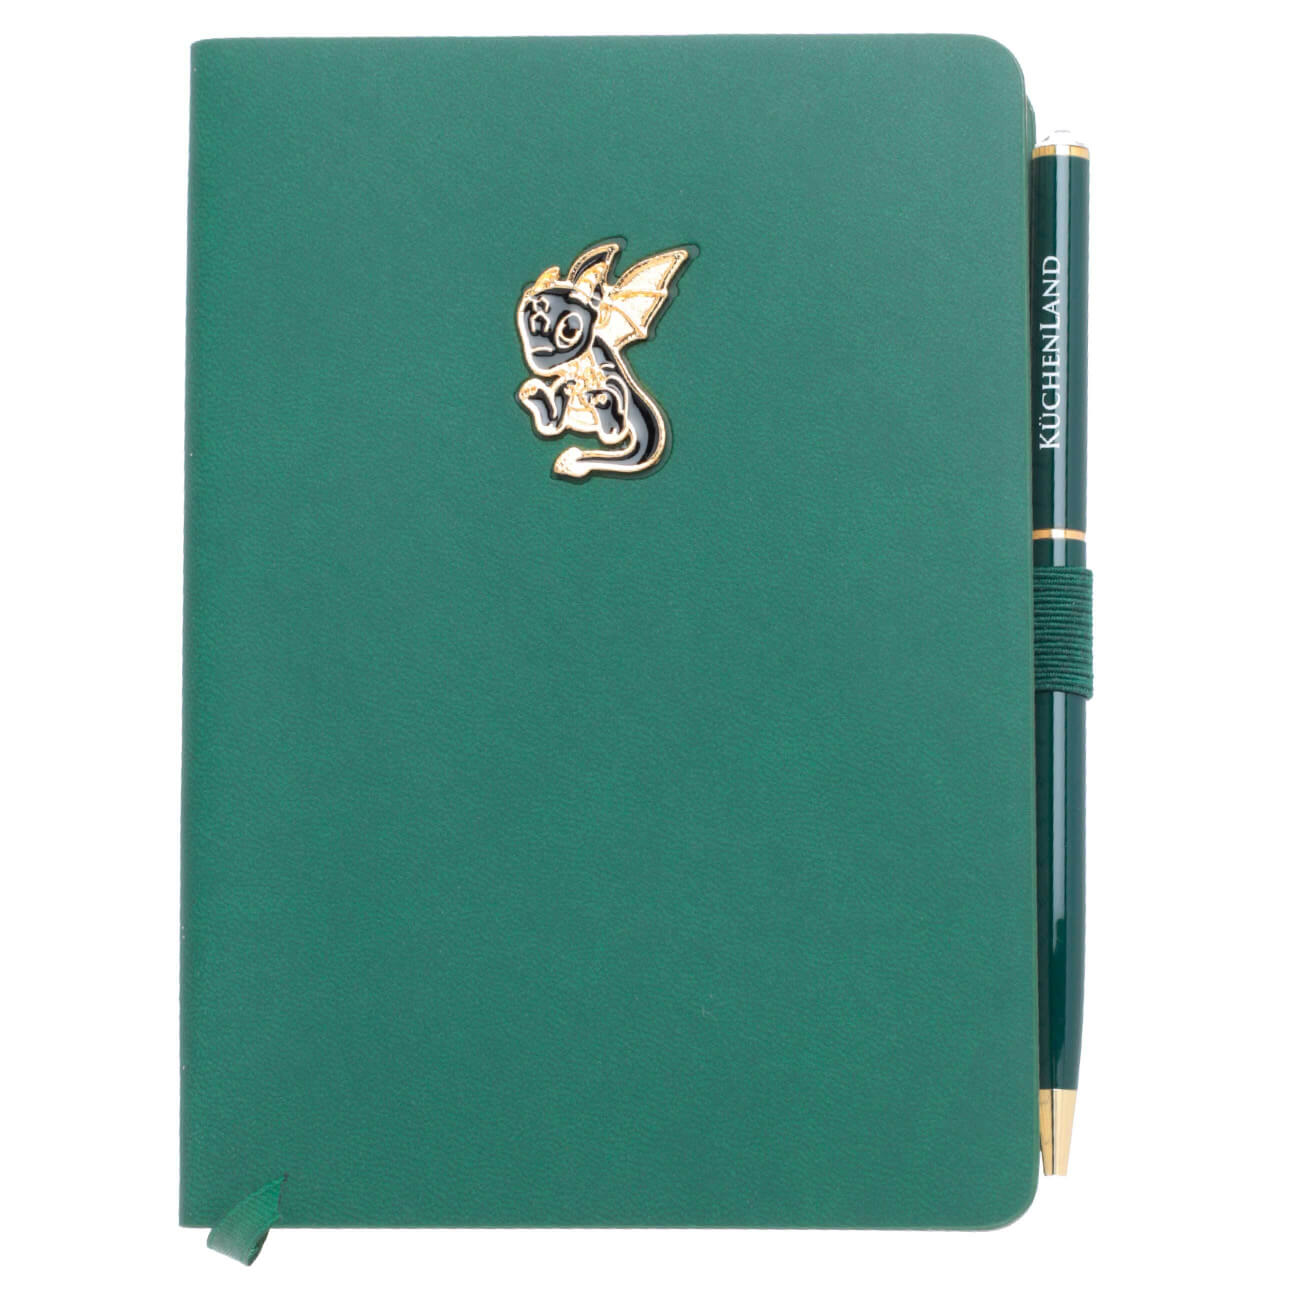 Блокнот для записей, 15х11 см, с ручкой, полиуретан, зеленый, Дракон с крыльями, Dragon spyro блокнот офисмаг